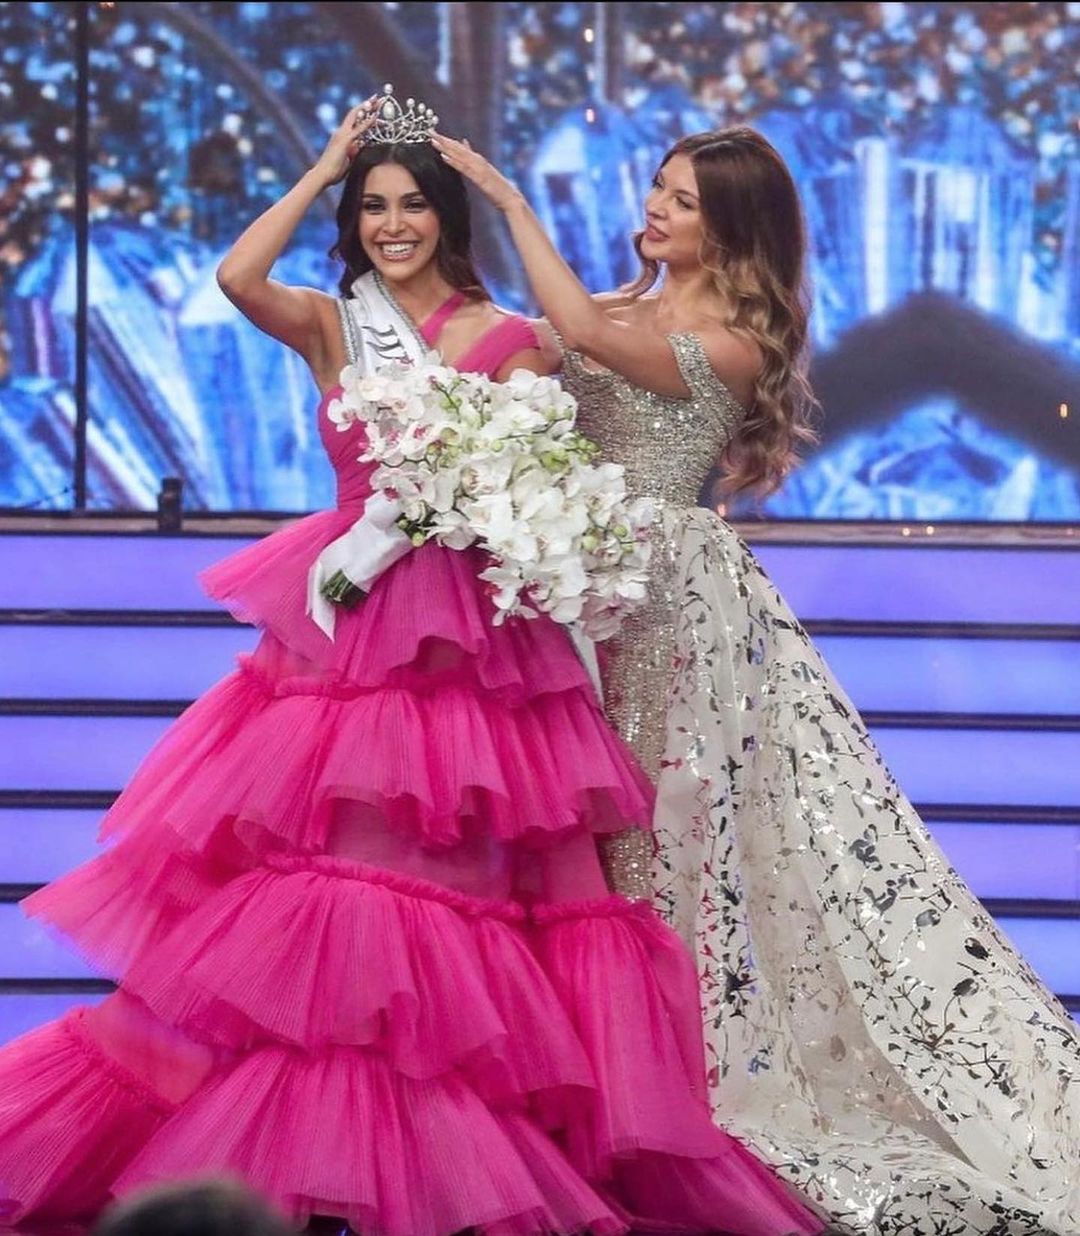 بعد 4 سنوات على تتويجها سّلمت ملكة جمال لبنان لعام 2018 مايا رعيدي التاج إلى خليفتها